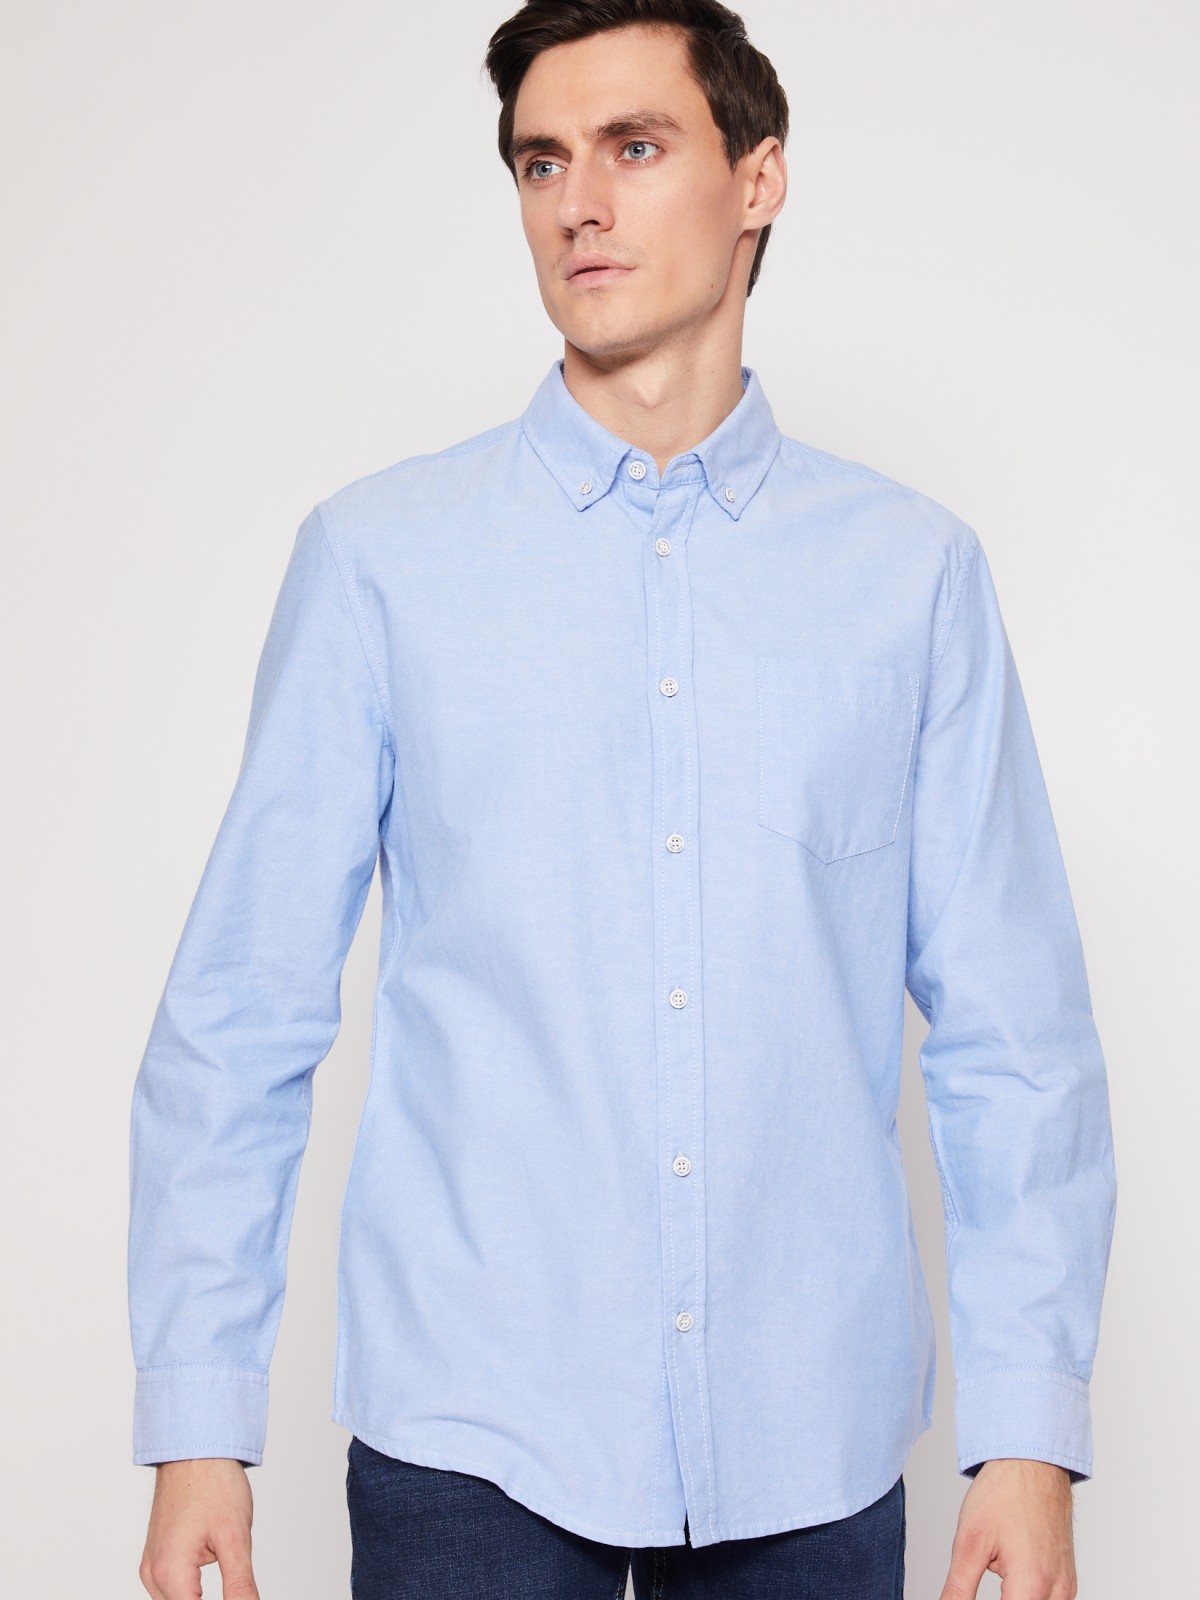 Хлопковая рубашка с длинным рукавом zolla 012122191013, цвет светло-голубой, размер M - фото 5